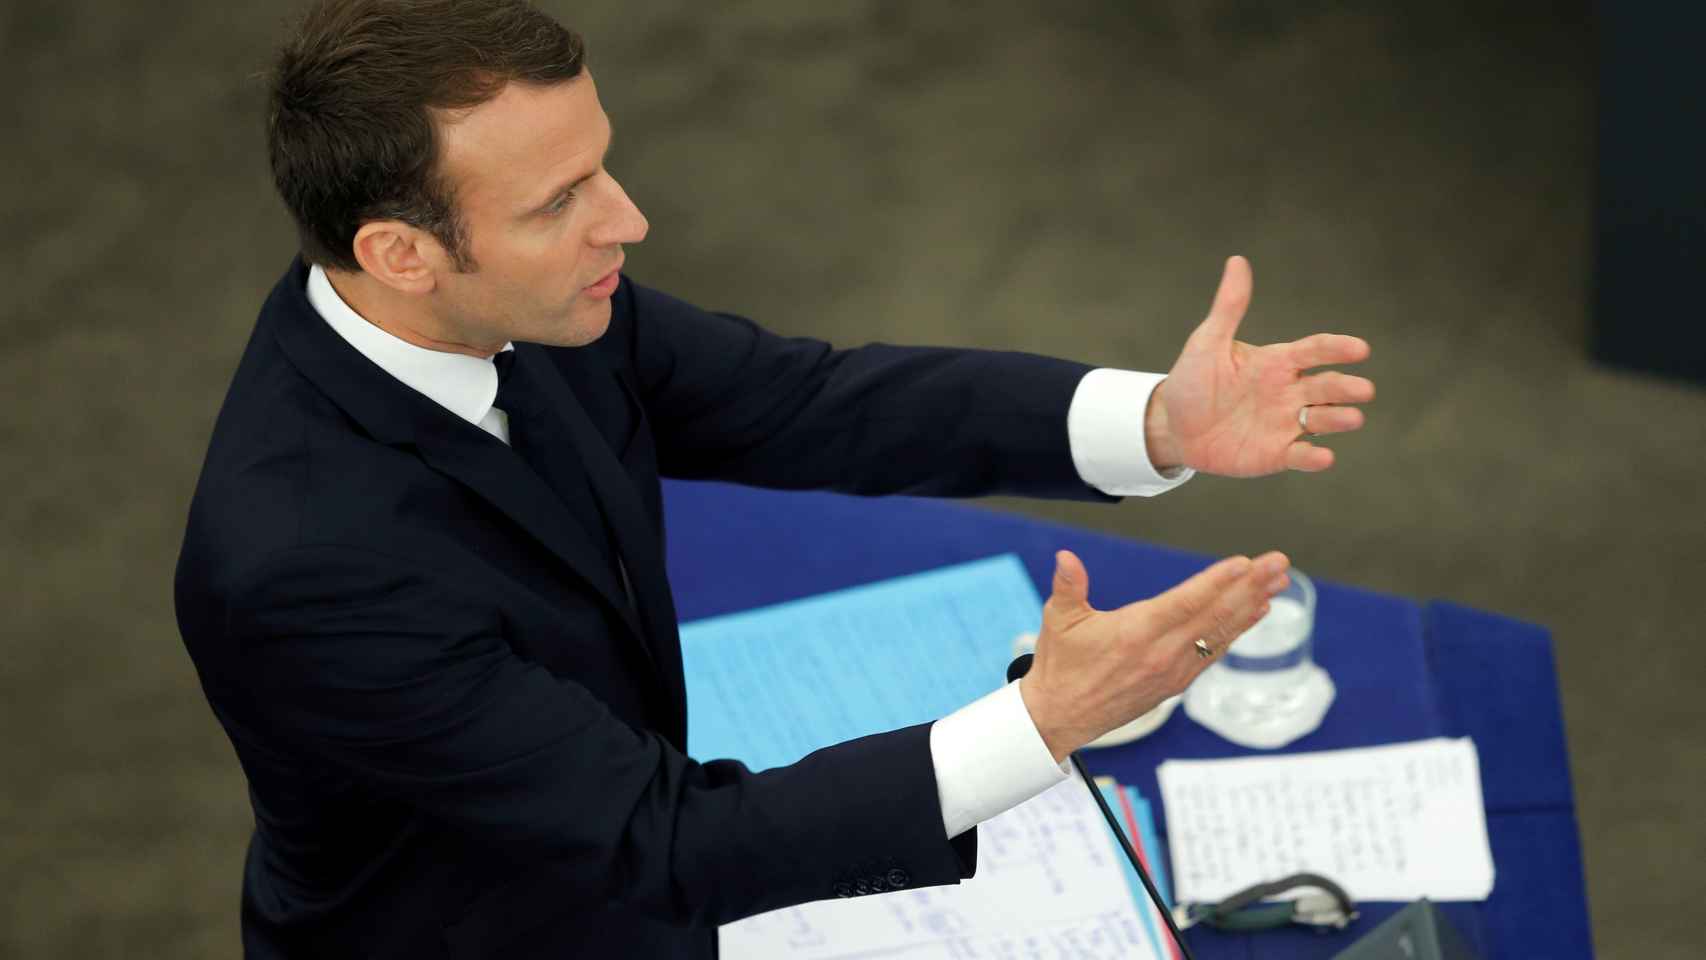 El presidente Macron, durante su discurso ante la Eurocámara